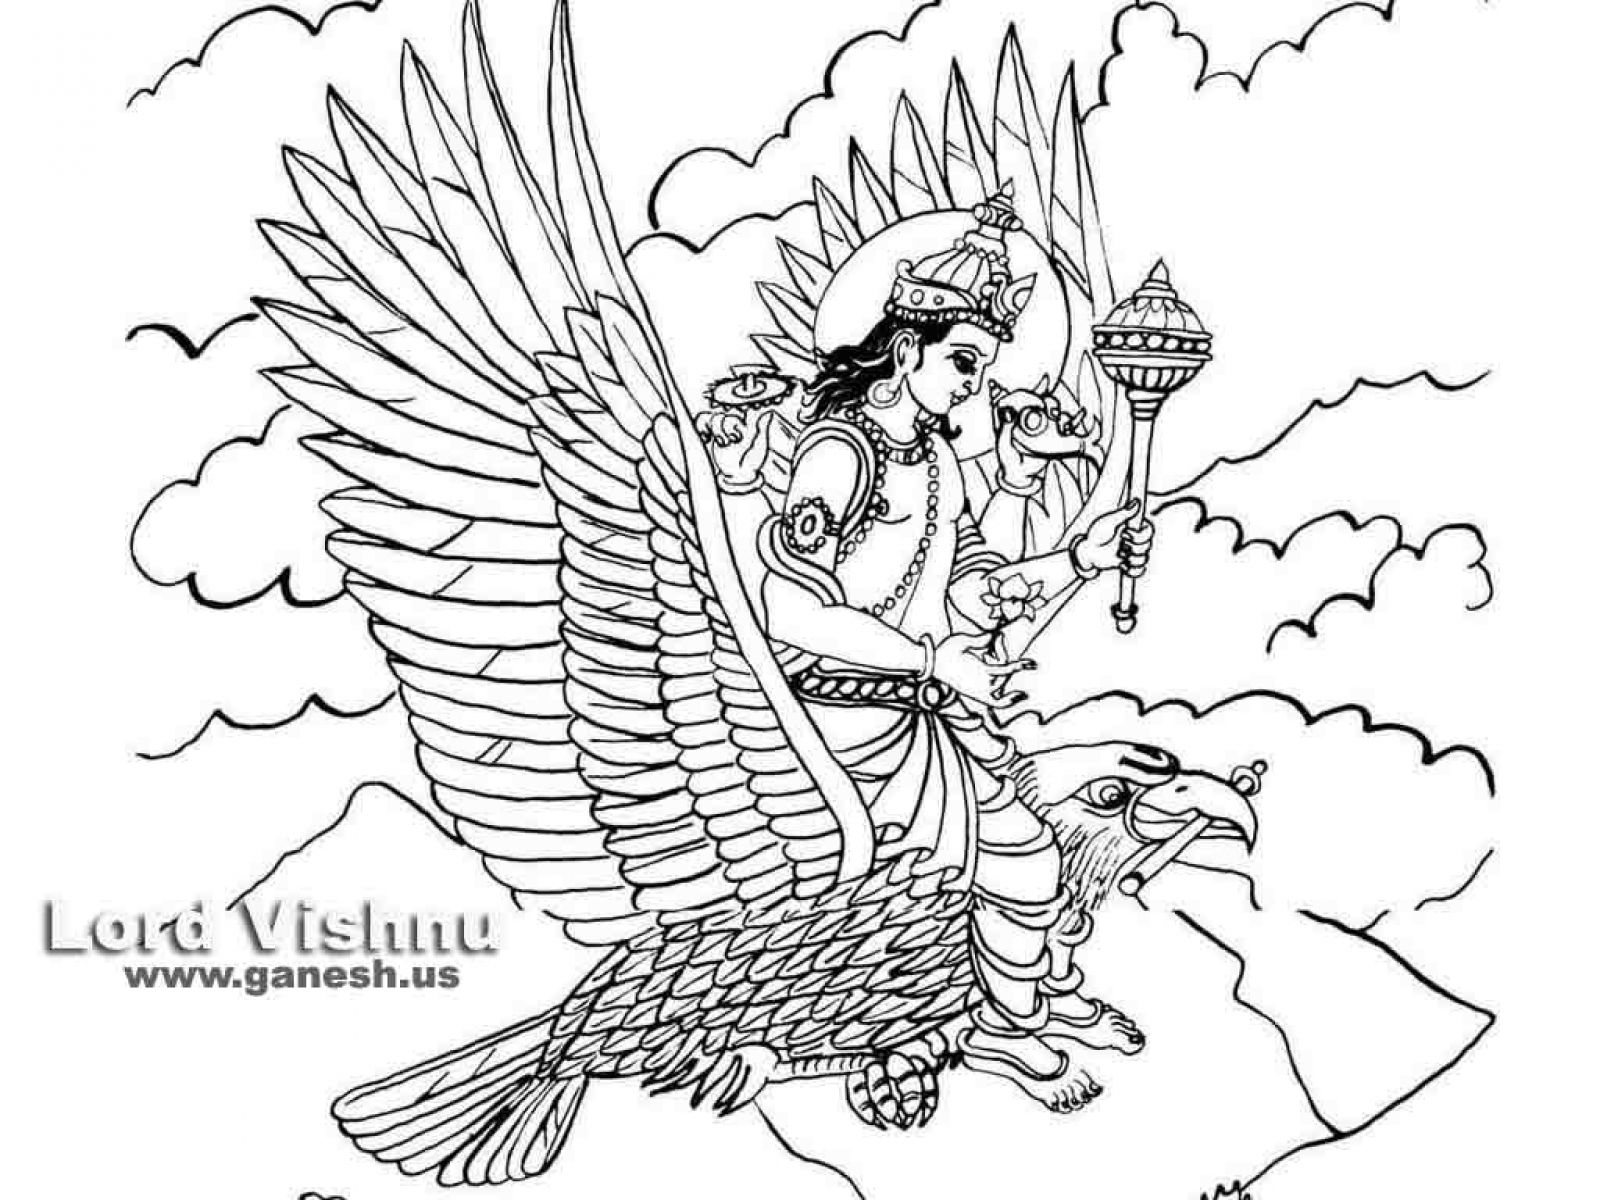 Vishnu Coloring Pages at GetColorings.com | Free printable colorings